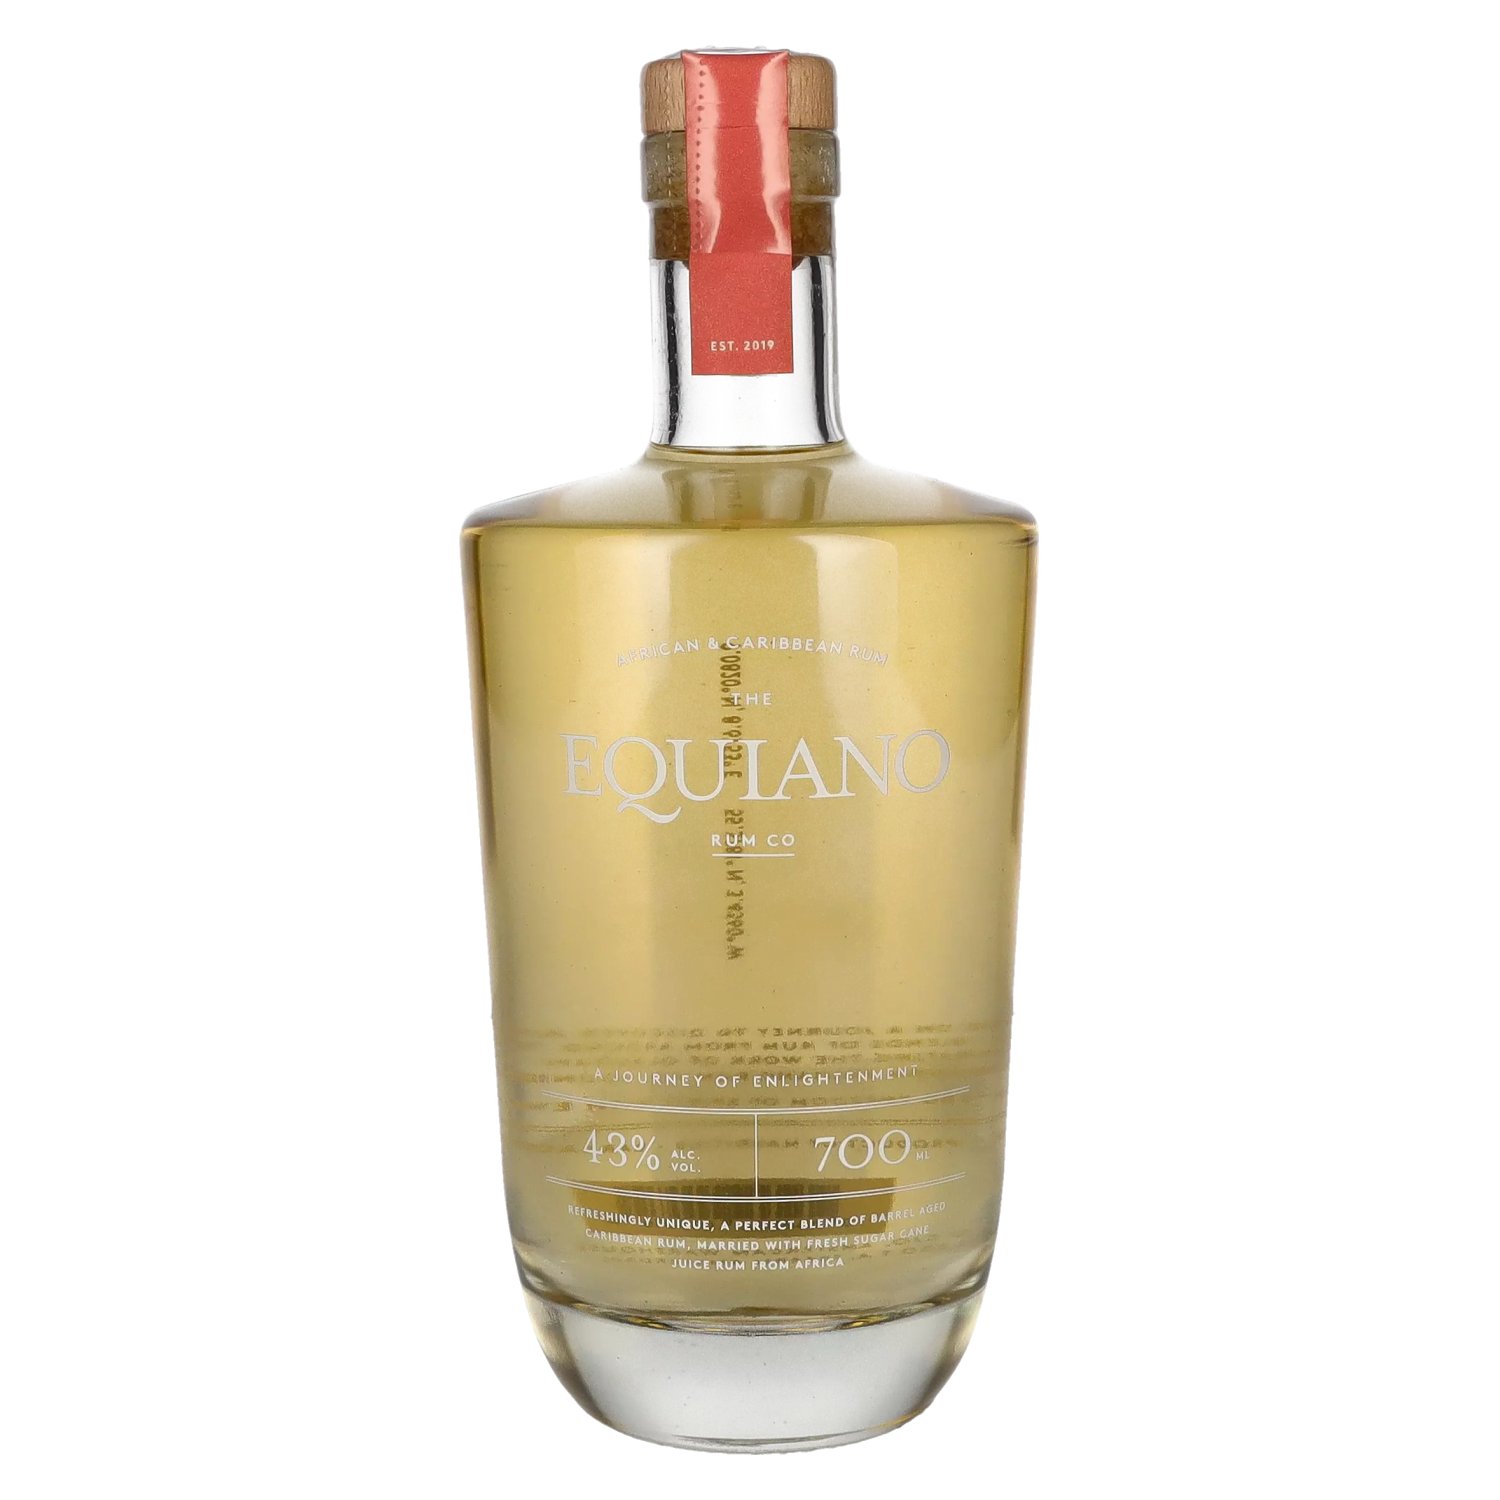 The Equiano Rum Co 43% Vol. 0,7l - delicando